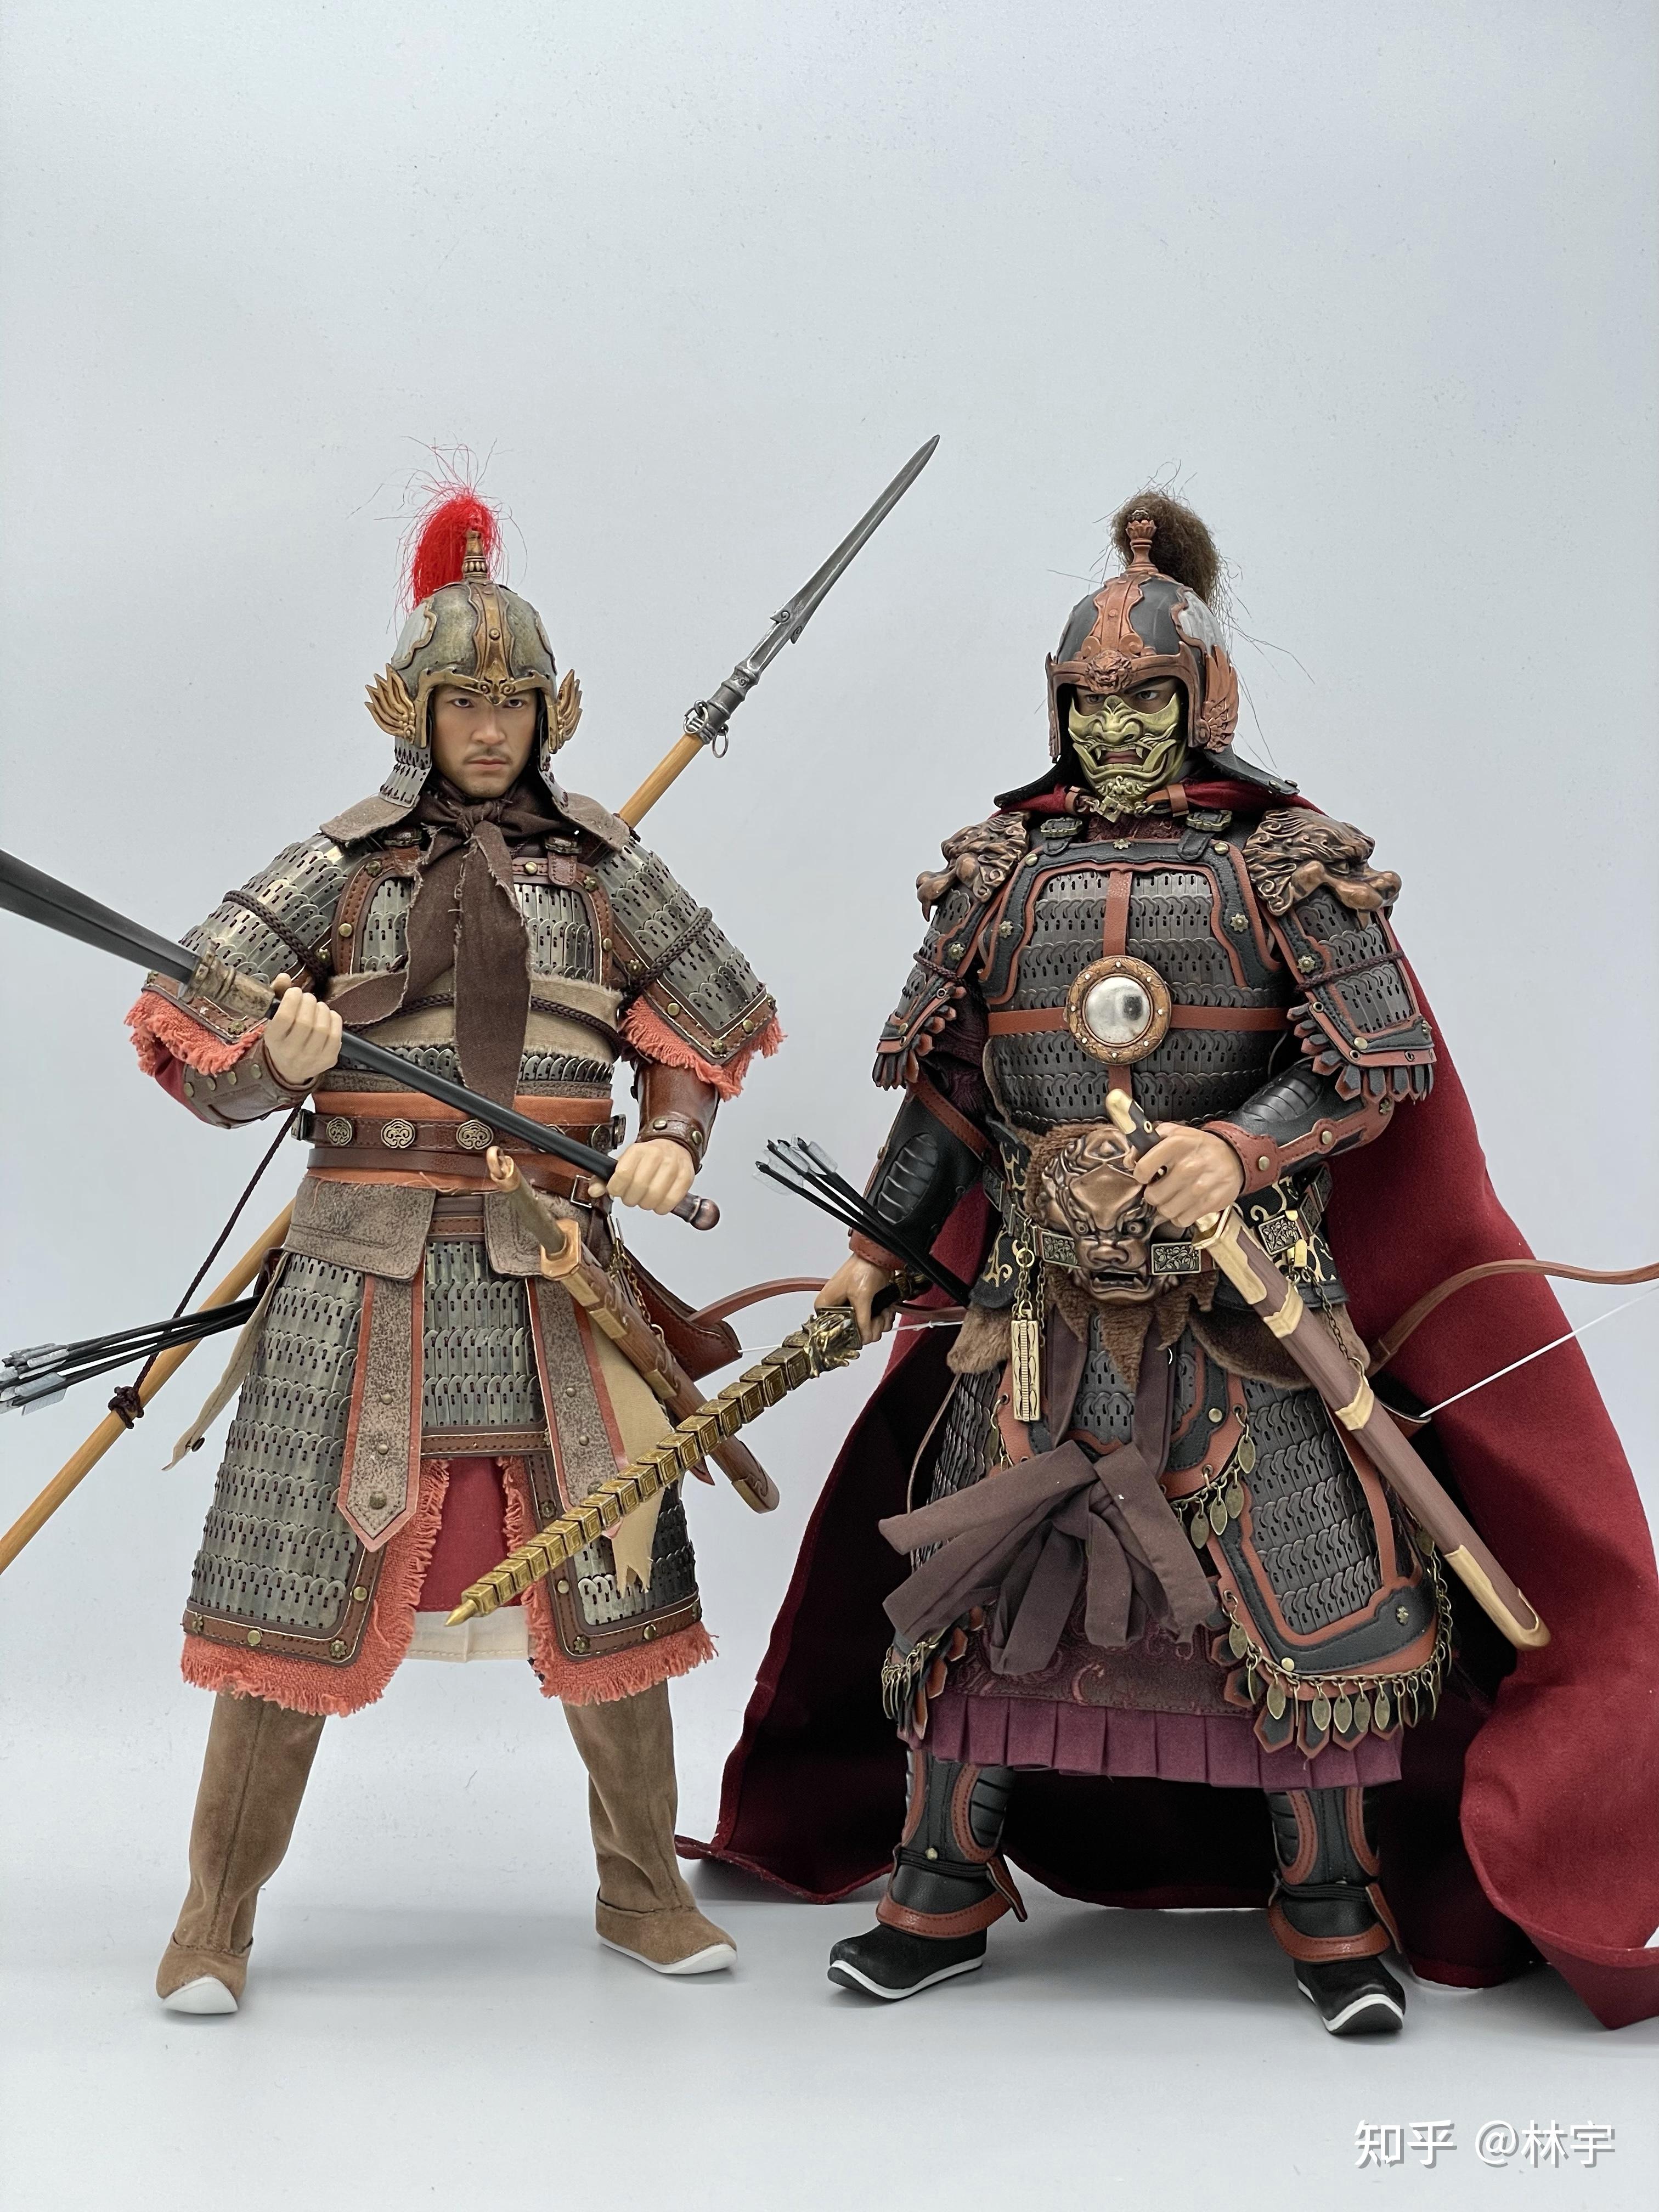 现在的盔甲爱好者大都喜欢西甲和日甲,中国古代的盔甲都很挫吗?